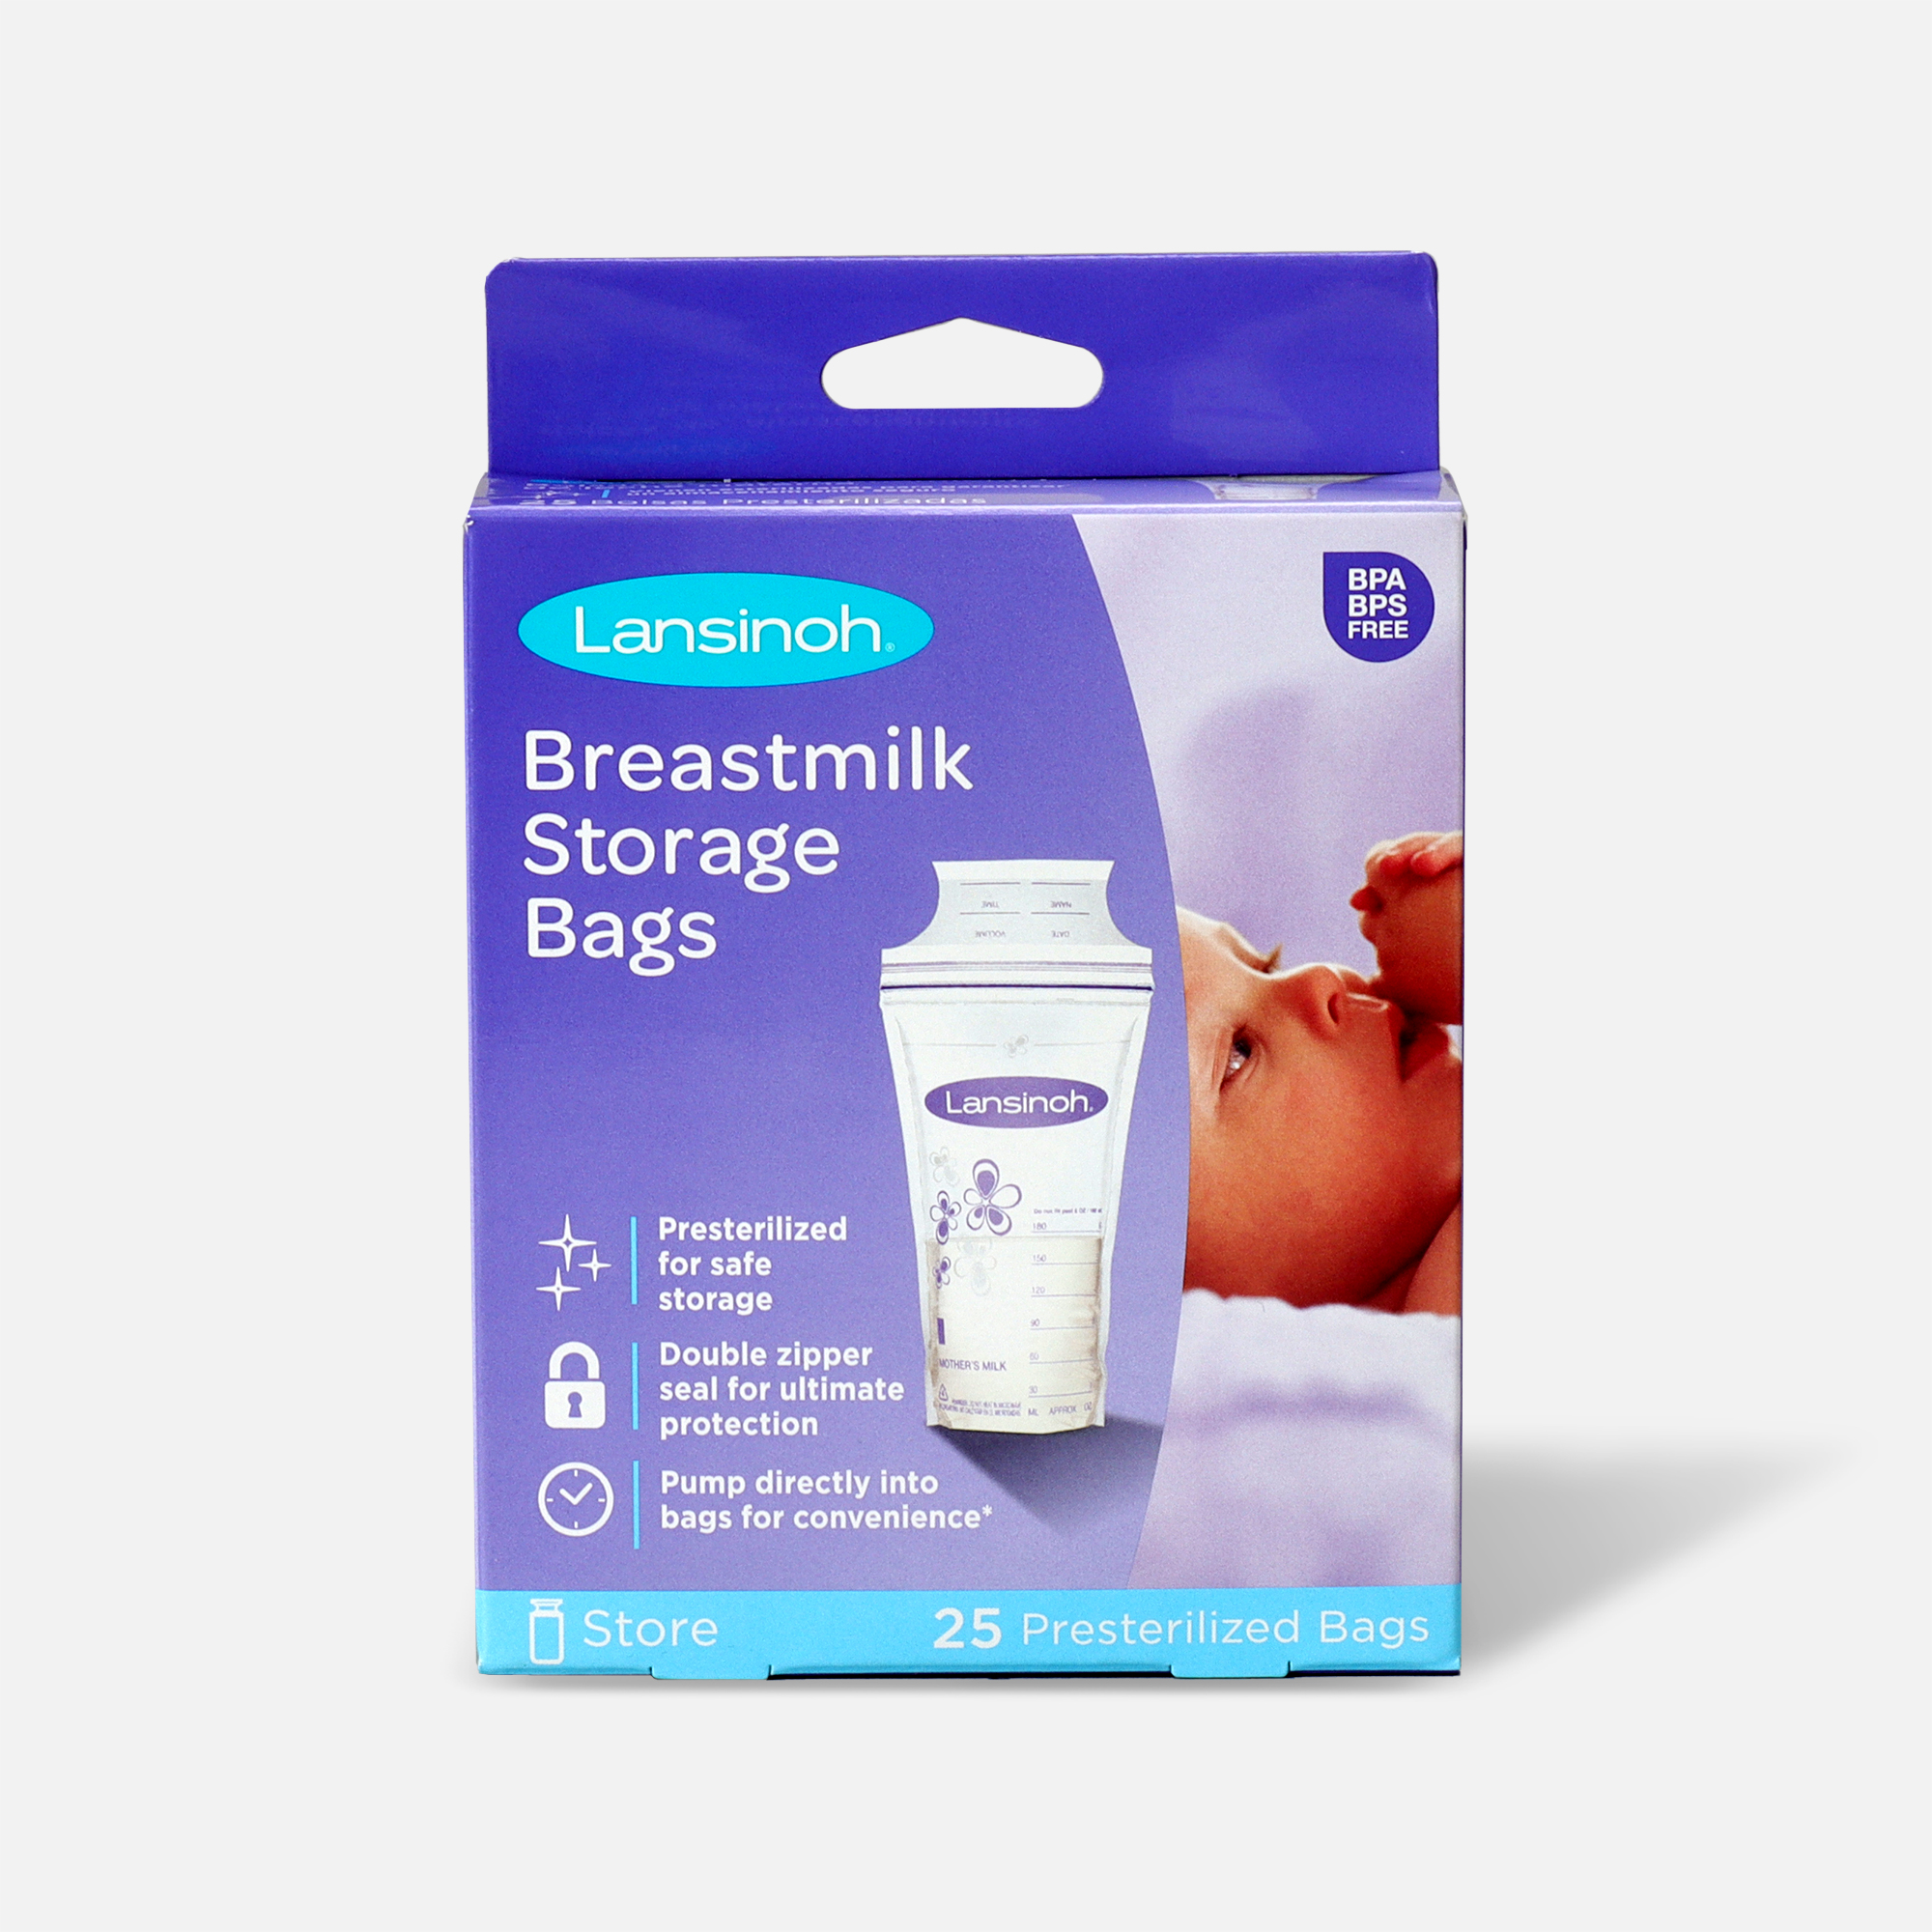 Breastmilk Storage Bags, Breast Milk Storing Bags, Bpa Free, Milk